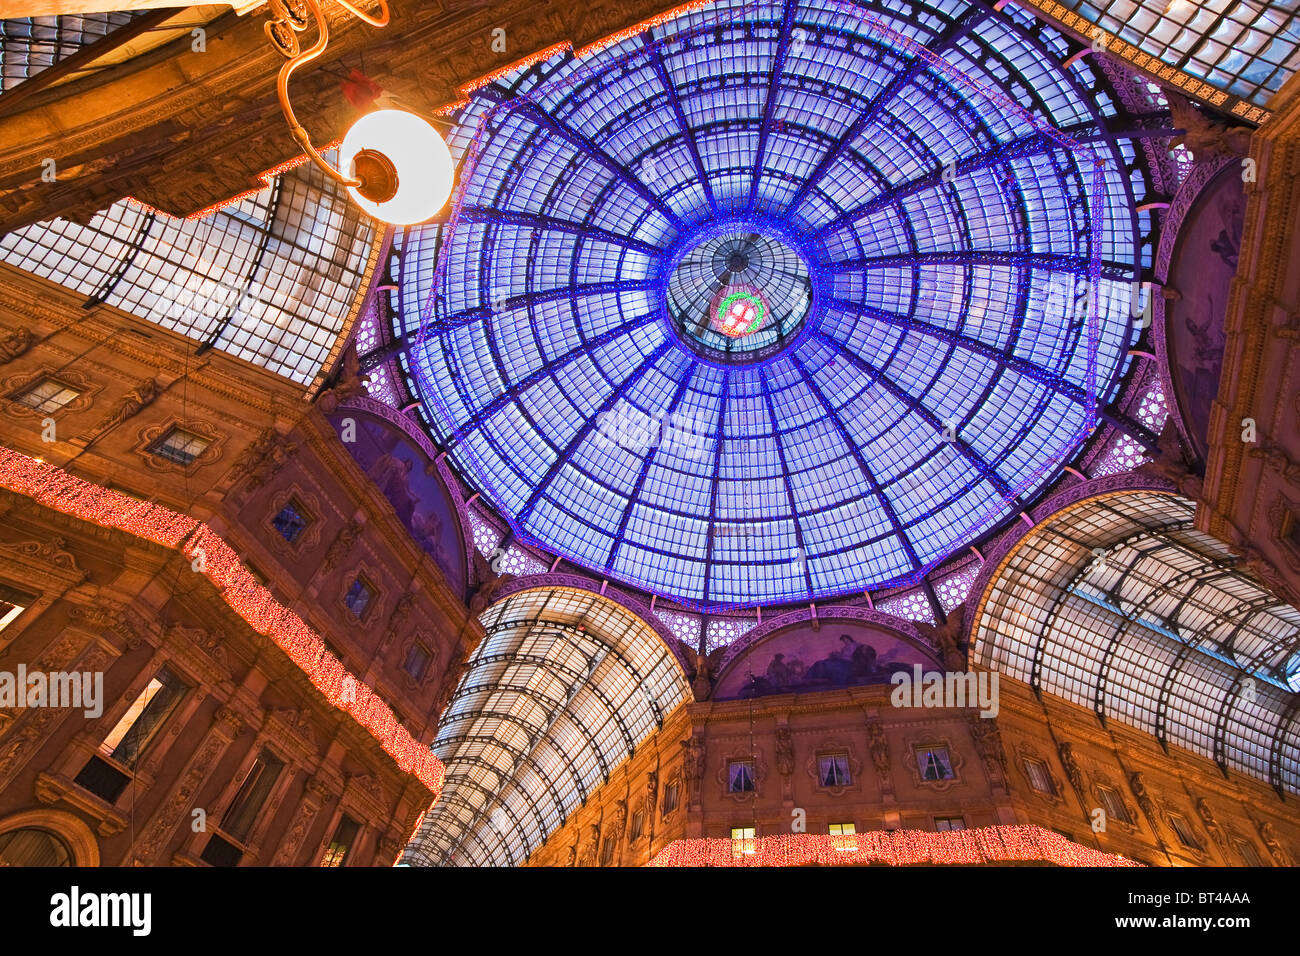 Dôme de verre de la galerie Vittorio Emanuele II shopping arcade conçu par l'architecte Giuseppe Mengoni en 1865. Milan, Italie Banque D'Images